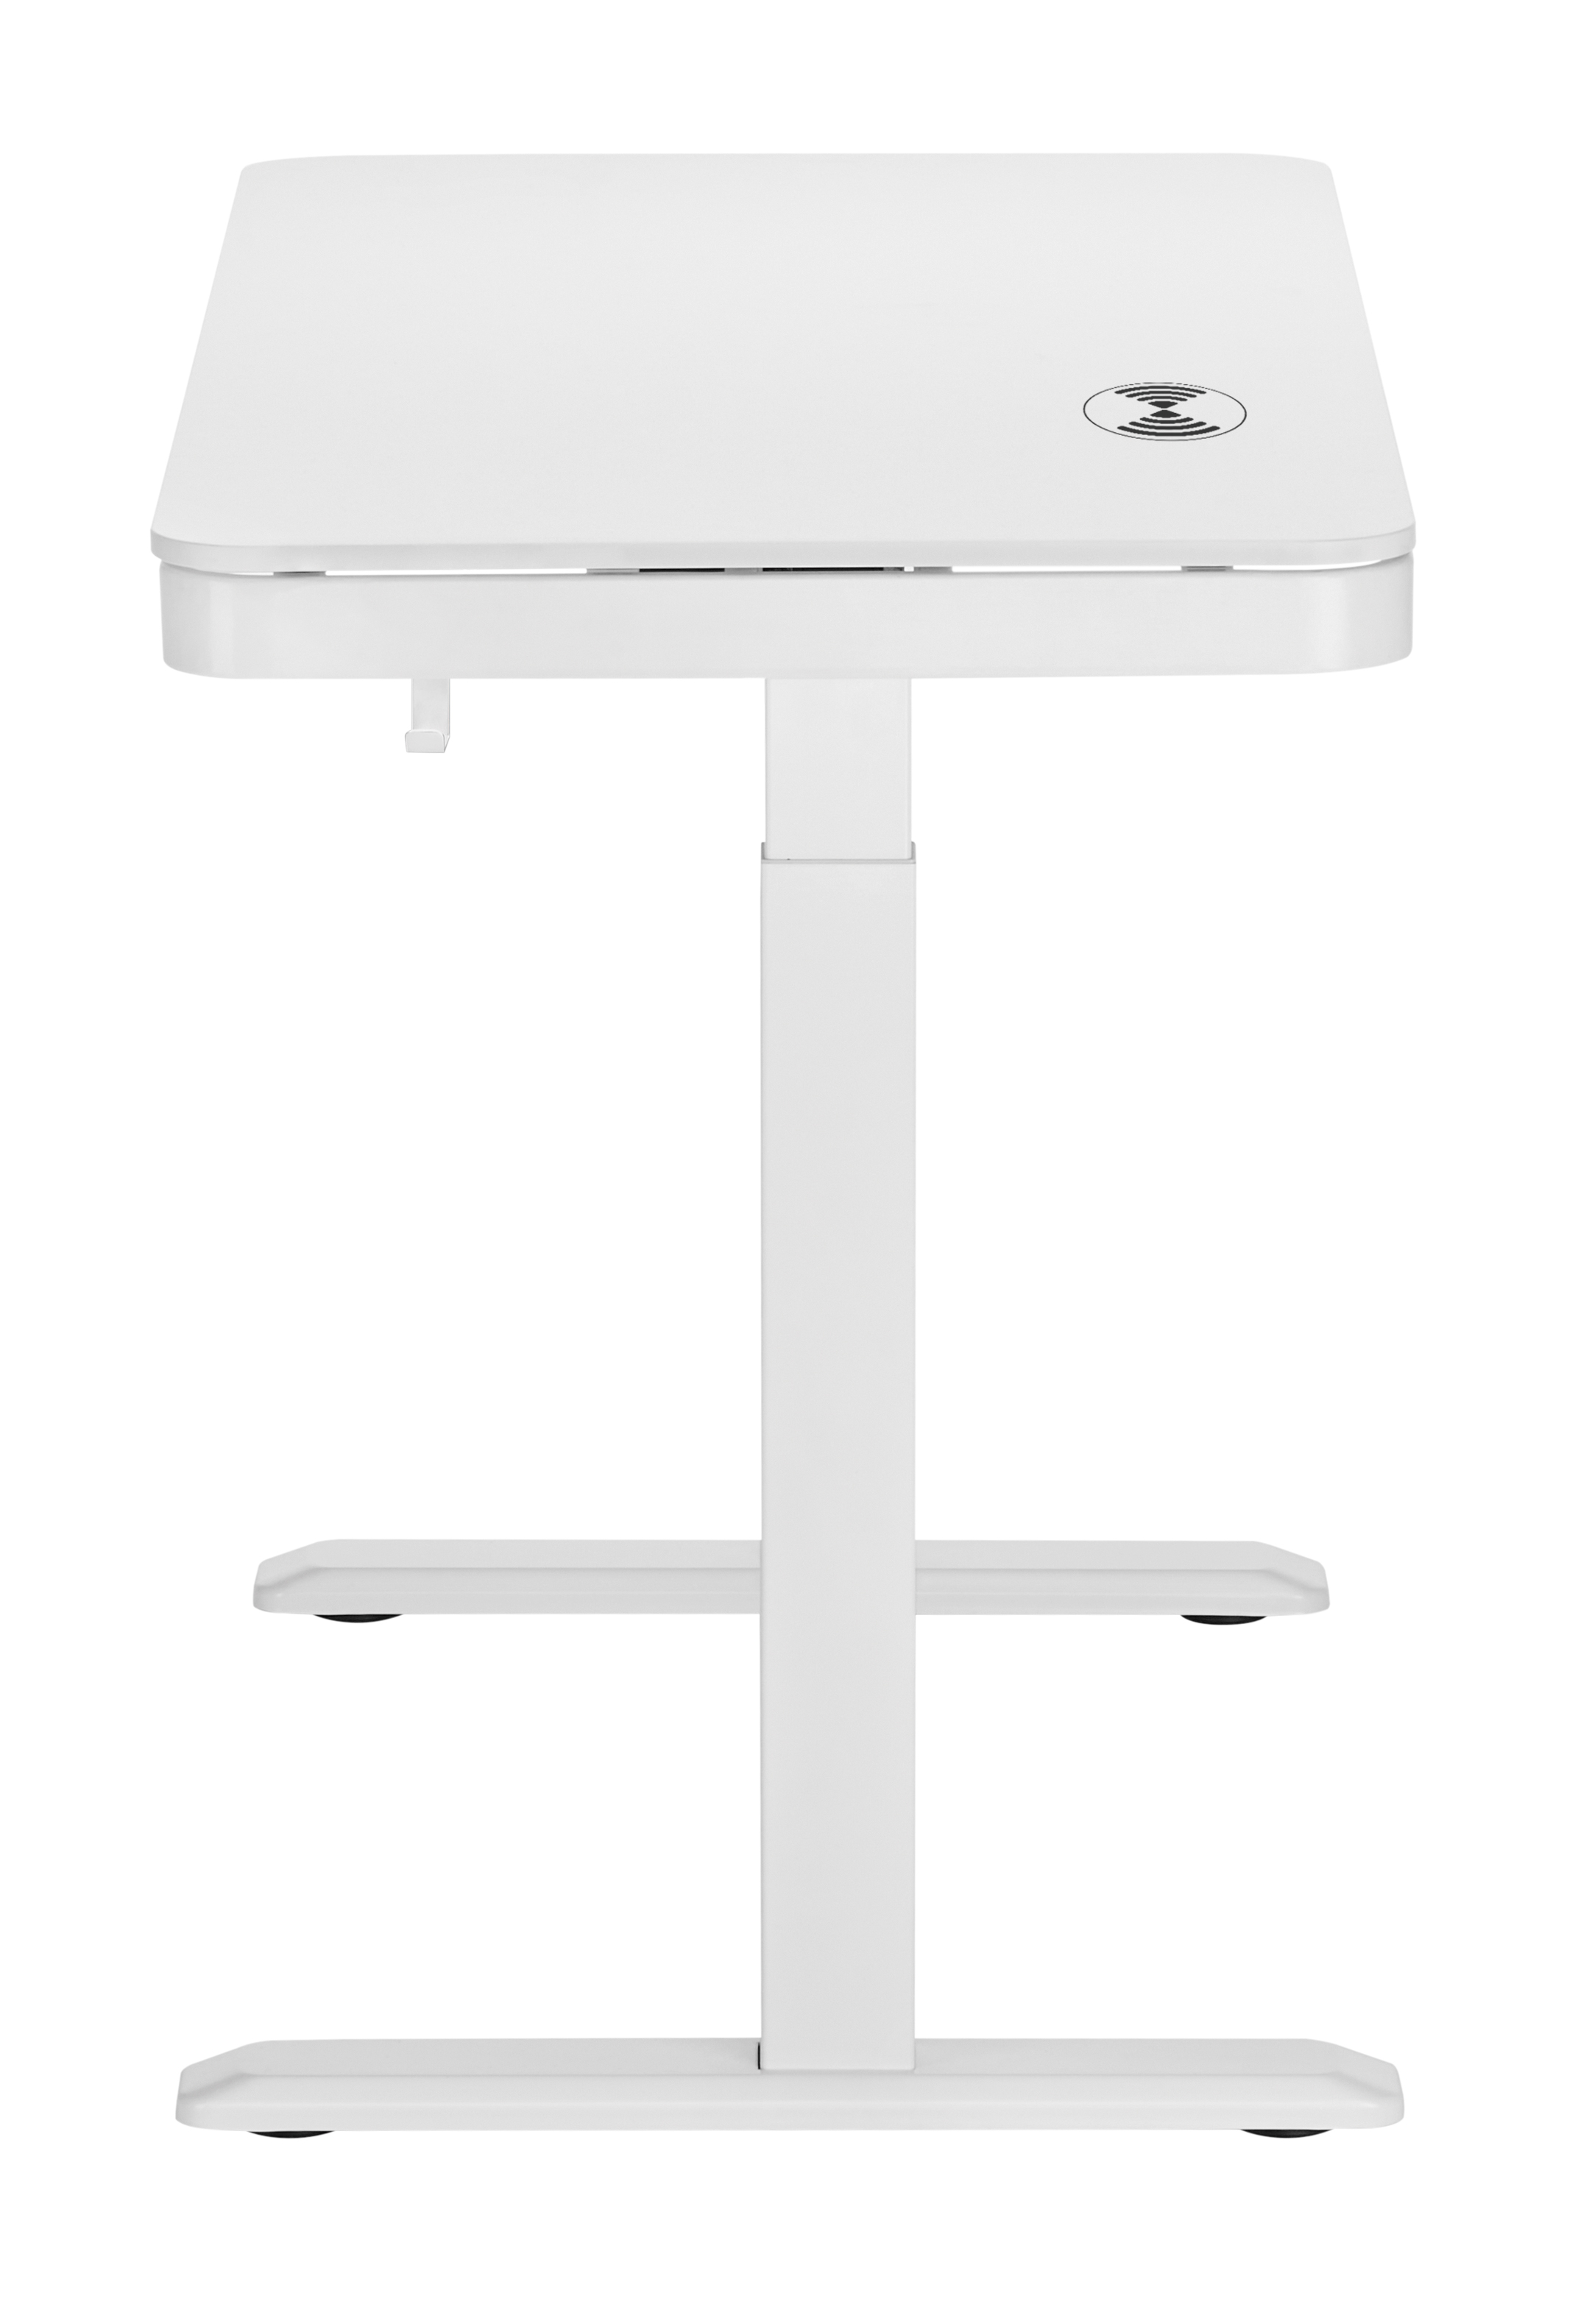 Комп'ютерний стіл OfficePro з електрорегулюванням висоти білий (ODE111WW) - фото 17